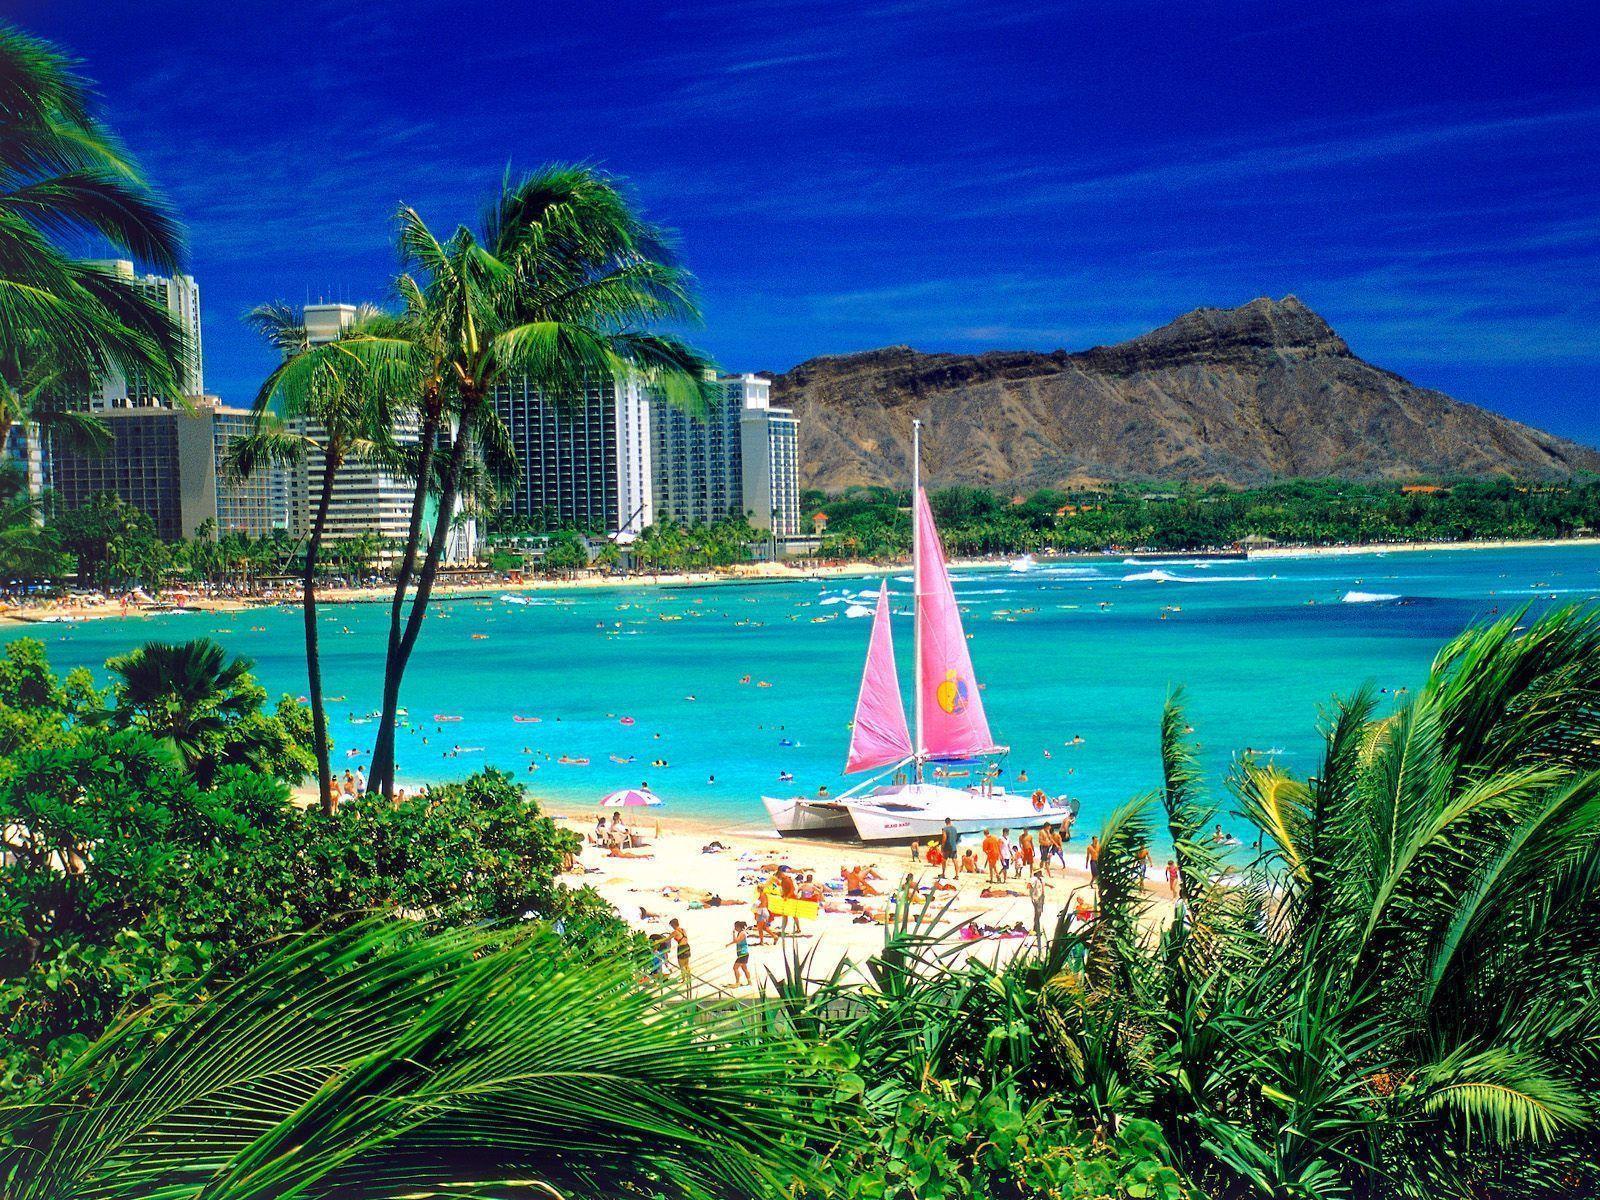 Hawaiian Desktop Wallpaper. Hawaiian Image Free